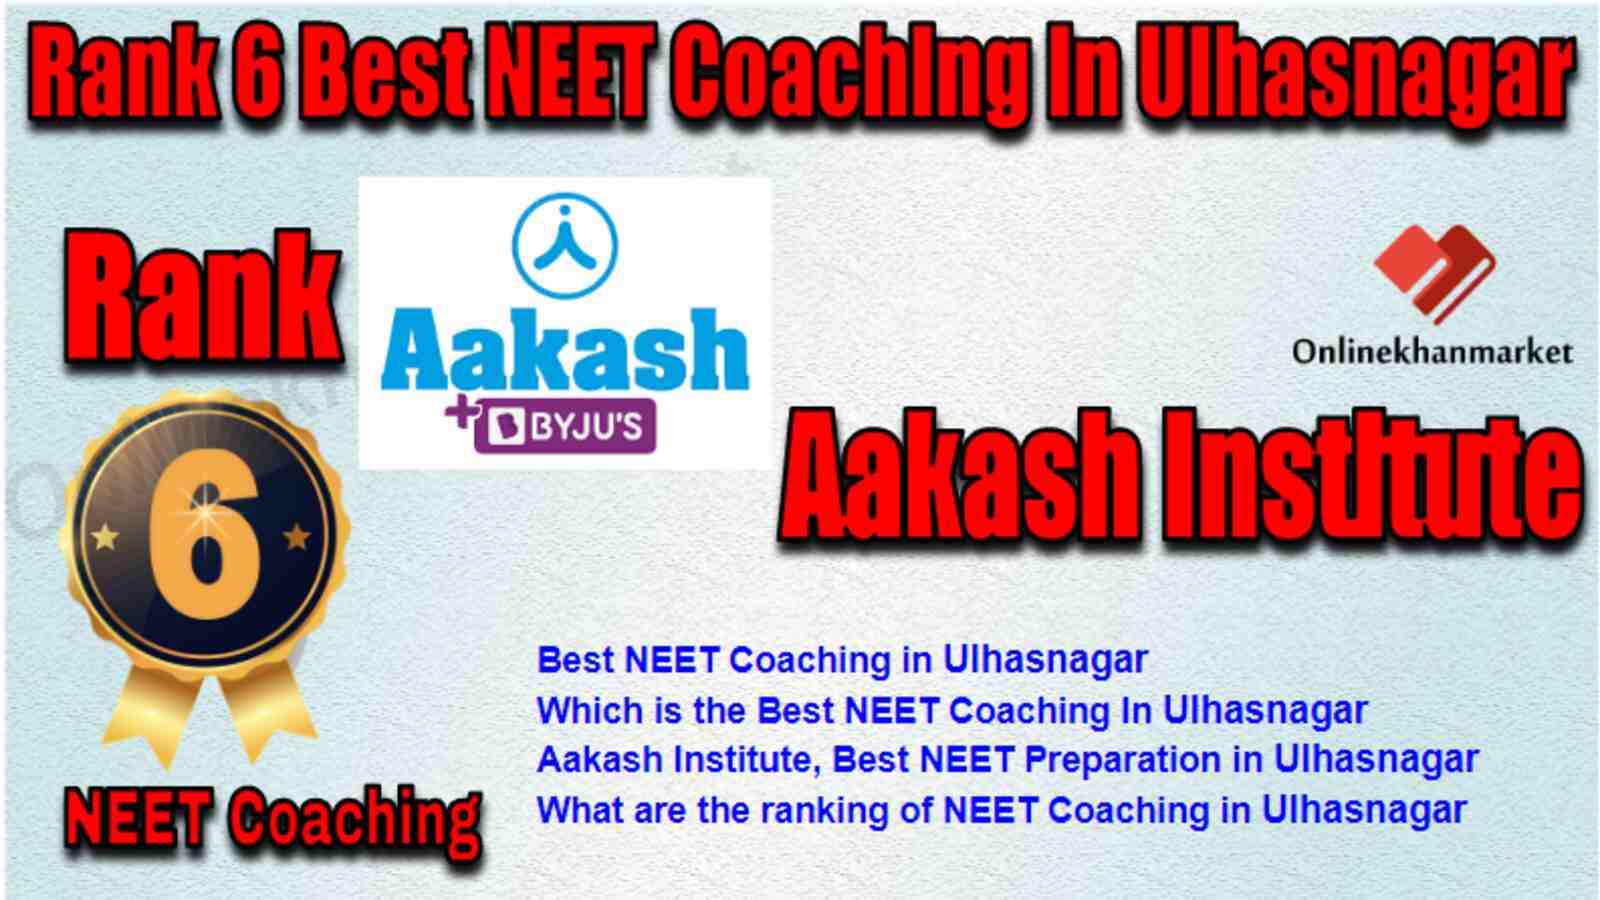 Rank 6 Best NEET Coaching in Ulhasnagar